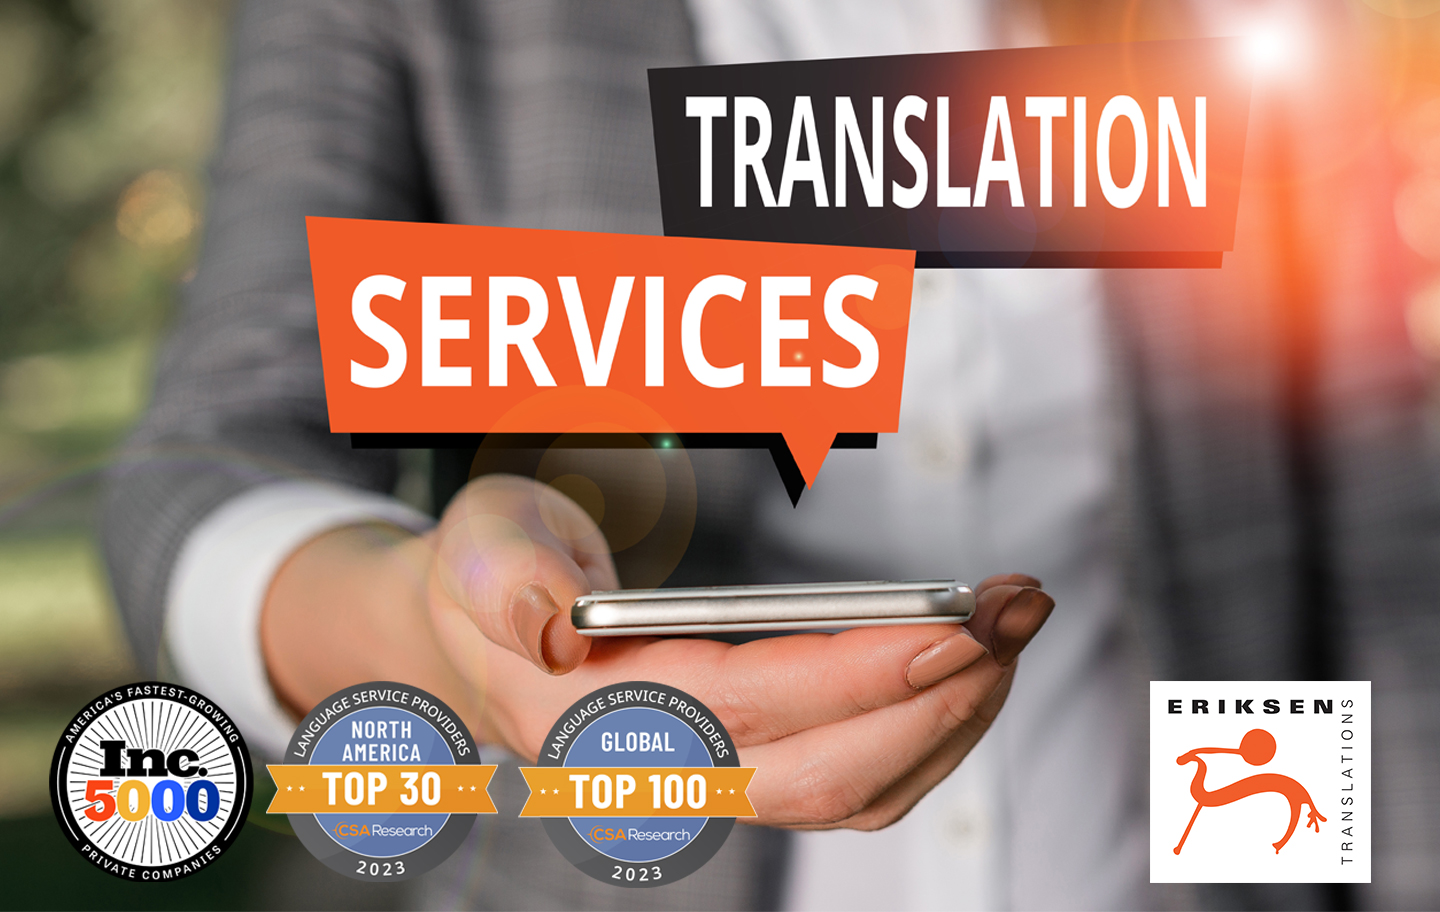 Eriksen Translation Services